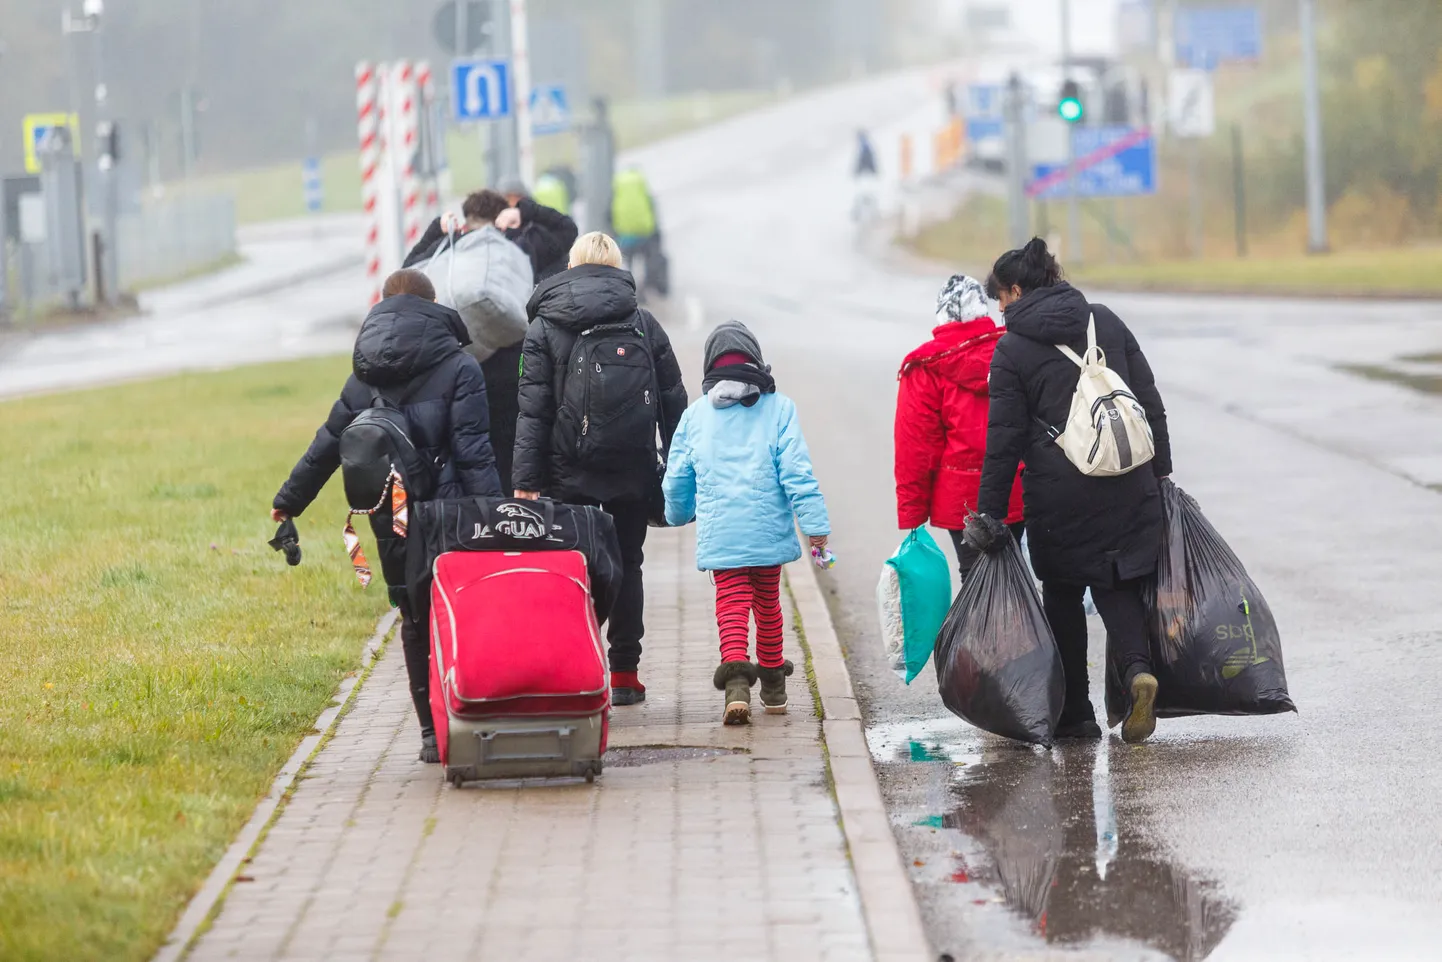 Ukraina põgenikud saabuvad läbi Luhamaa piiripunkti Eestisse. Enamuse jaoks on Eesti transiitriik, edasi suundutakse bussidega Poola.